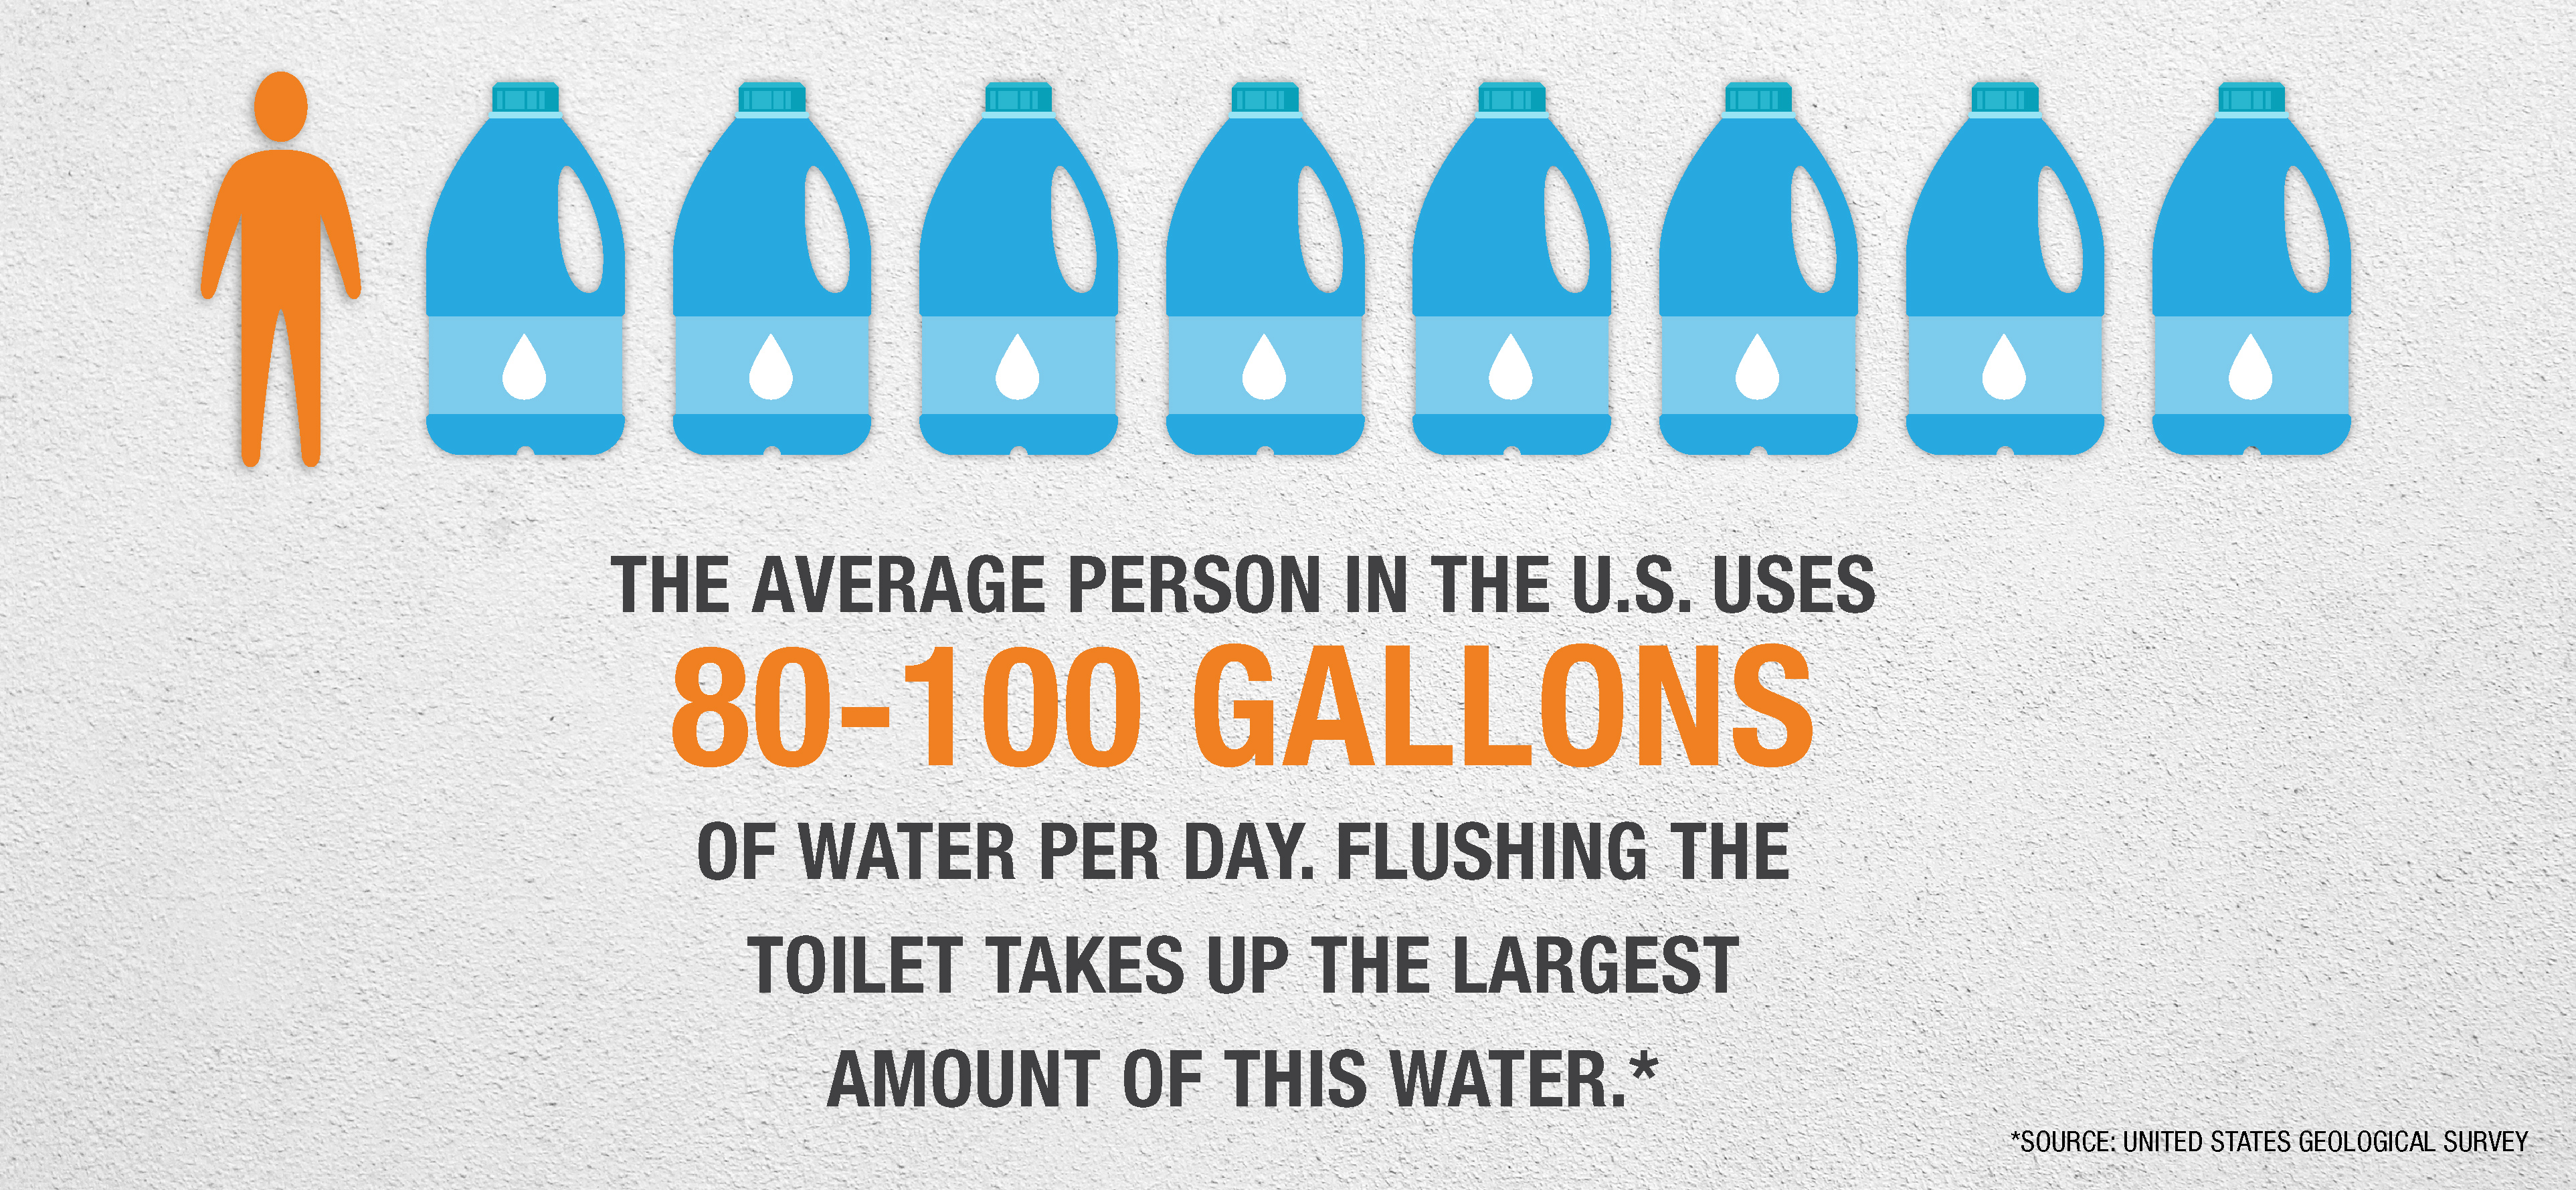 Infographic detailing average water usage